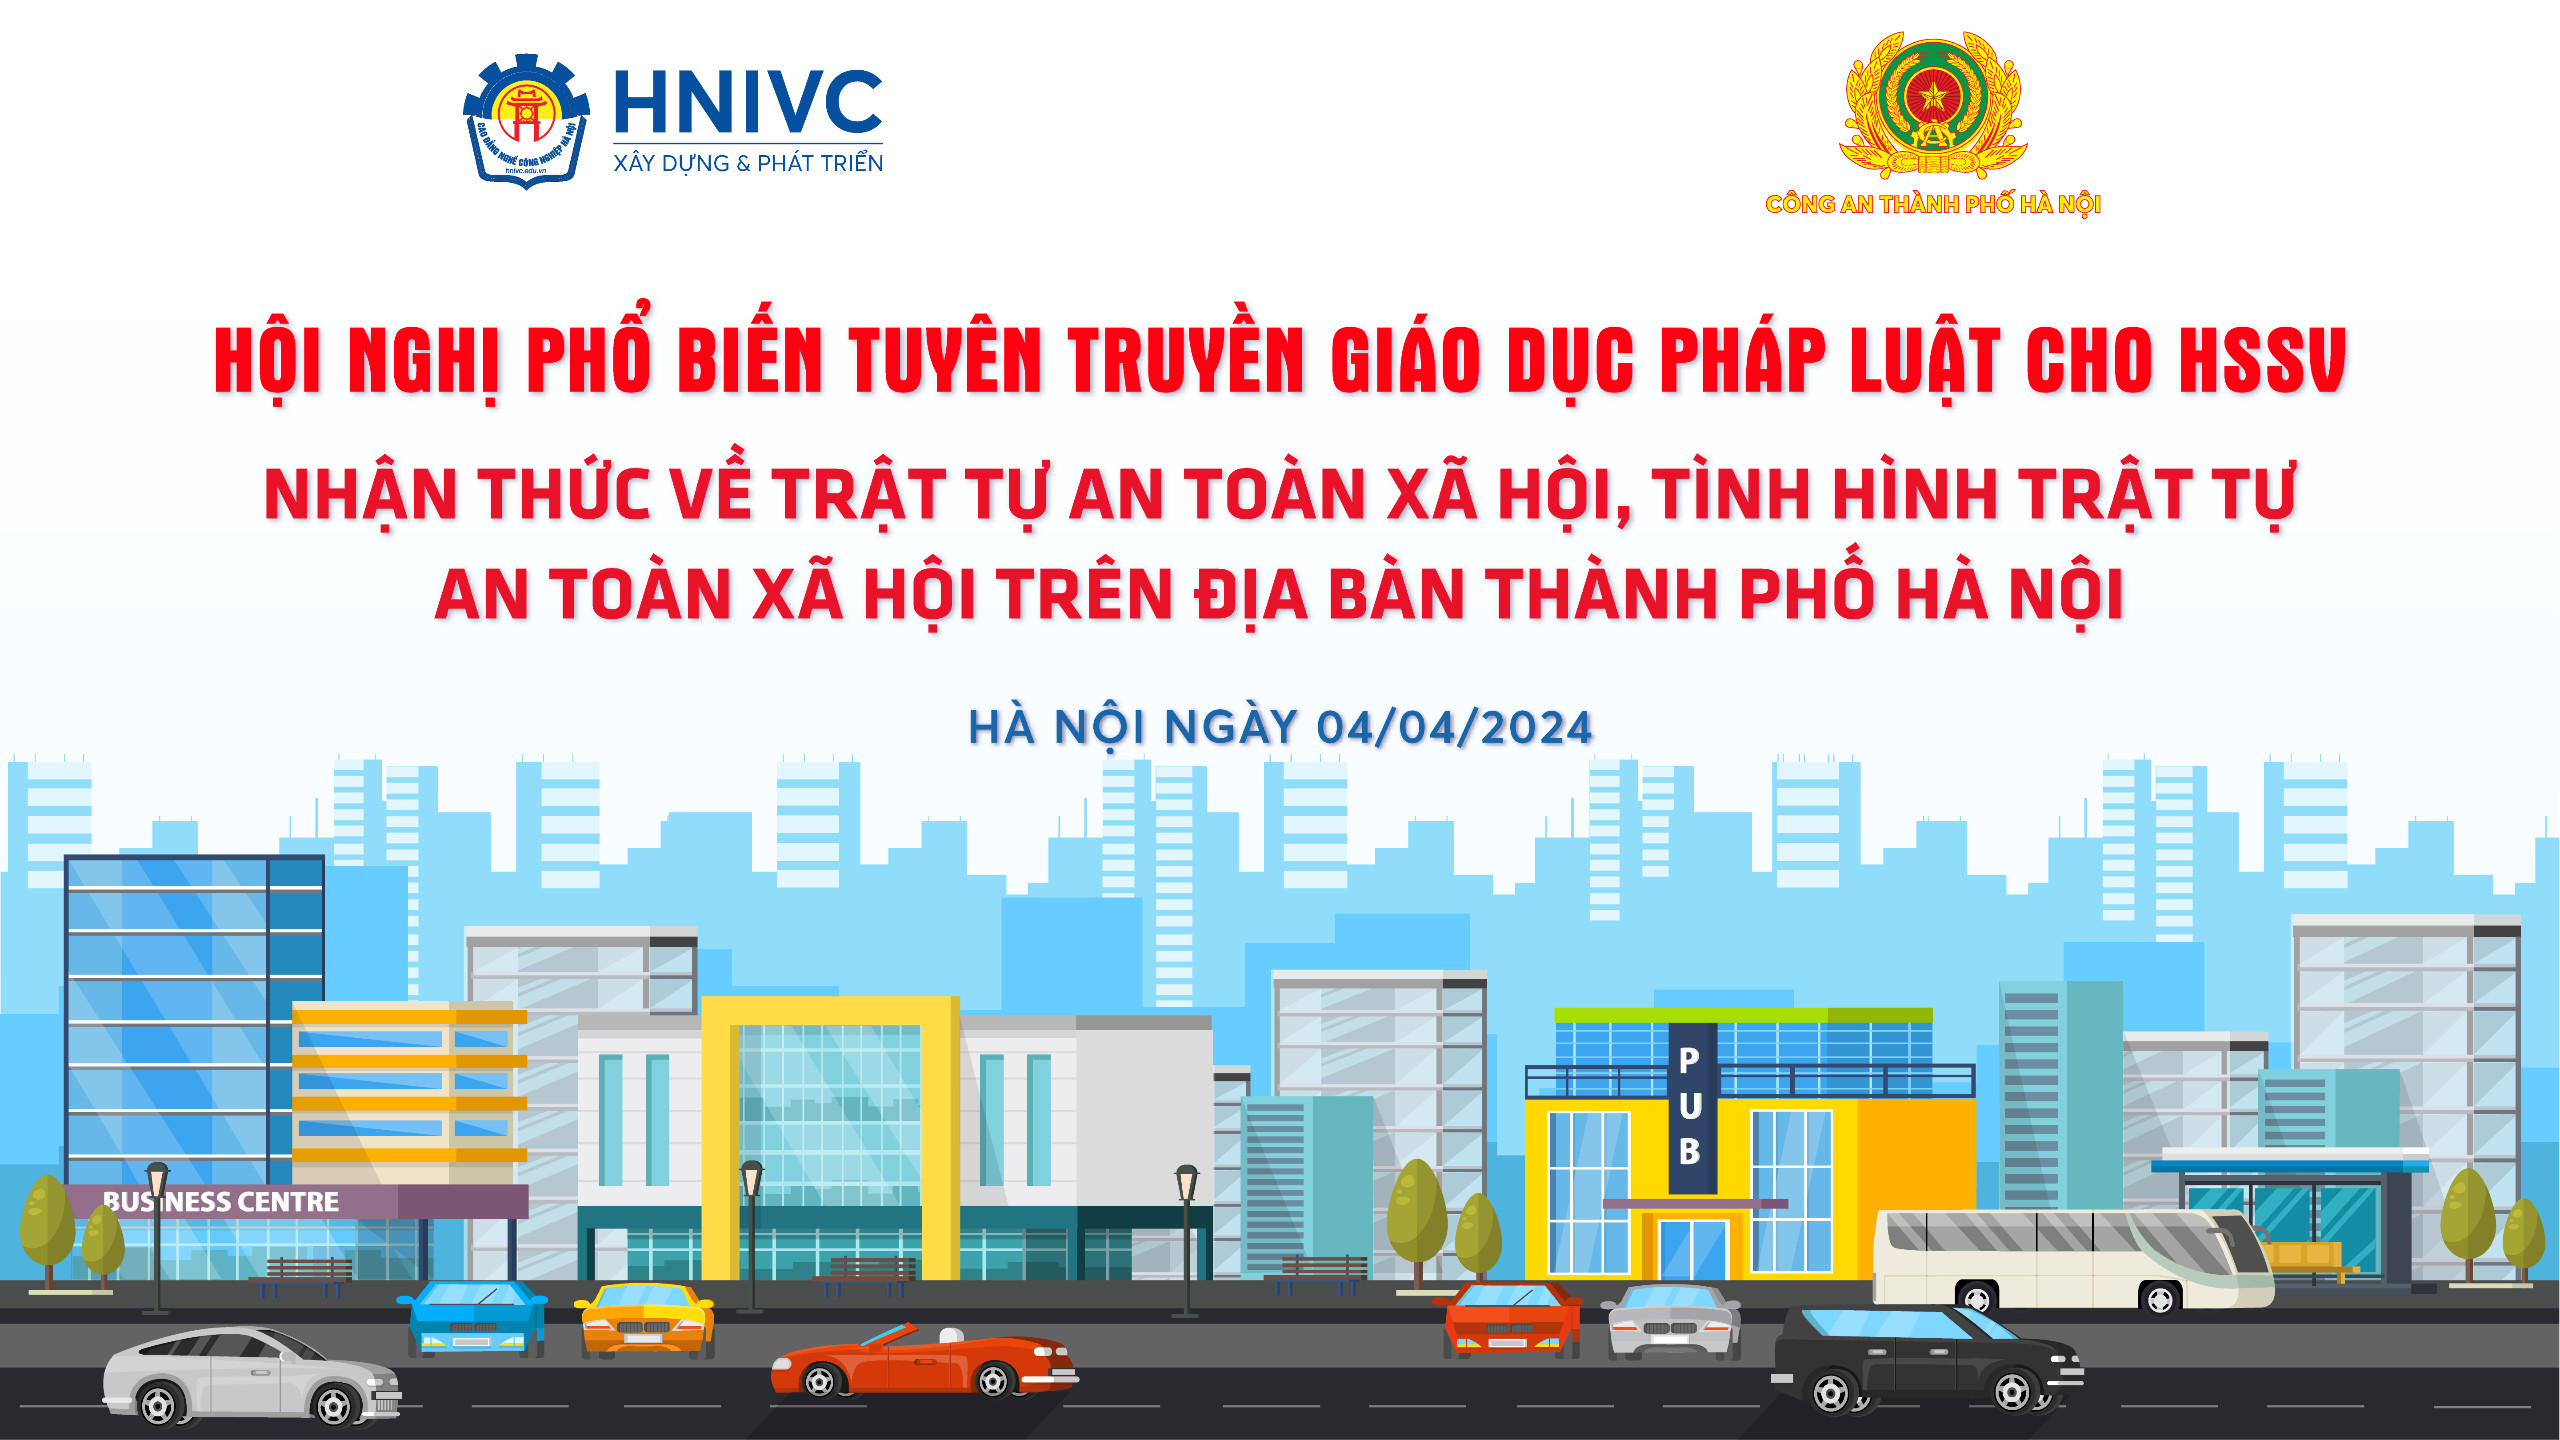 Hội nghị phổ biến tuyên truyền GDPL cho HSSV nhận thức về trật tự an toàn xã hội, tình hình trật tự an toàn xã hội trên địa bàn thành phố Hà Nội.